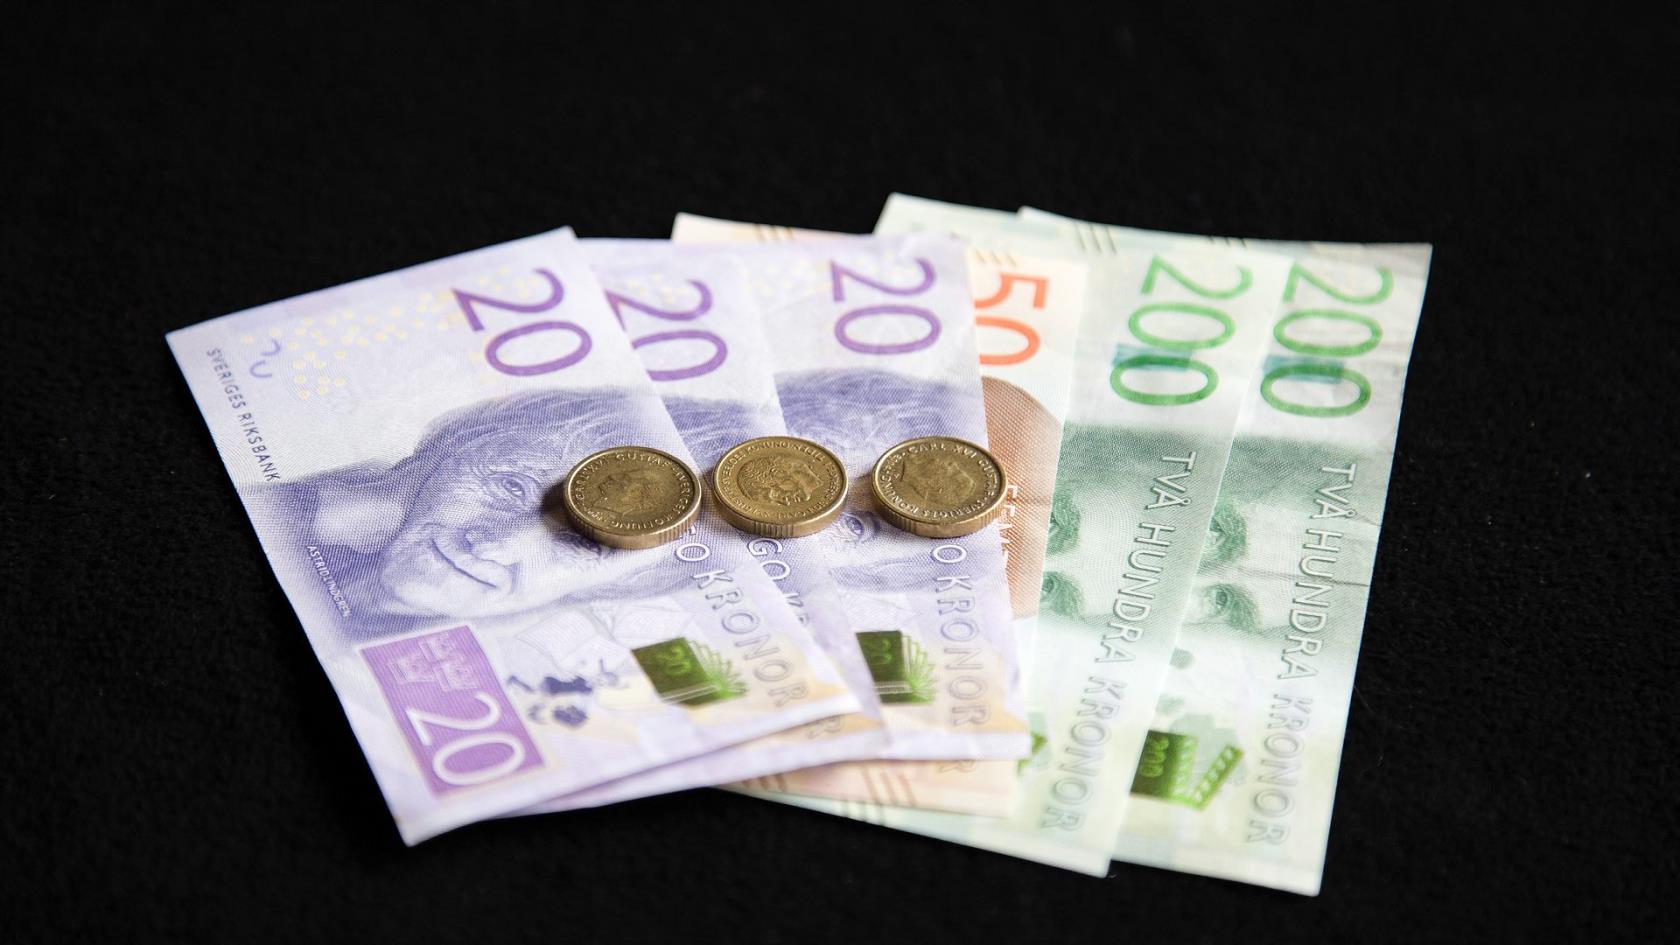 Svenska sedlar och mynt ligger på ett bord.